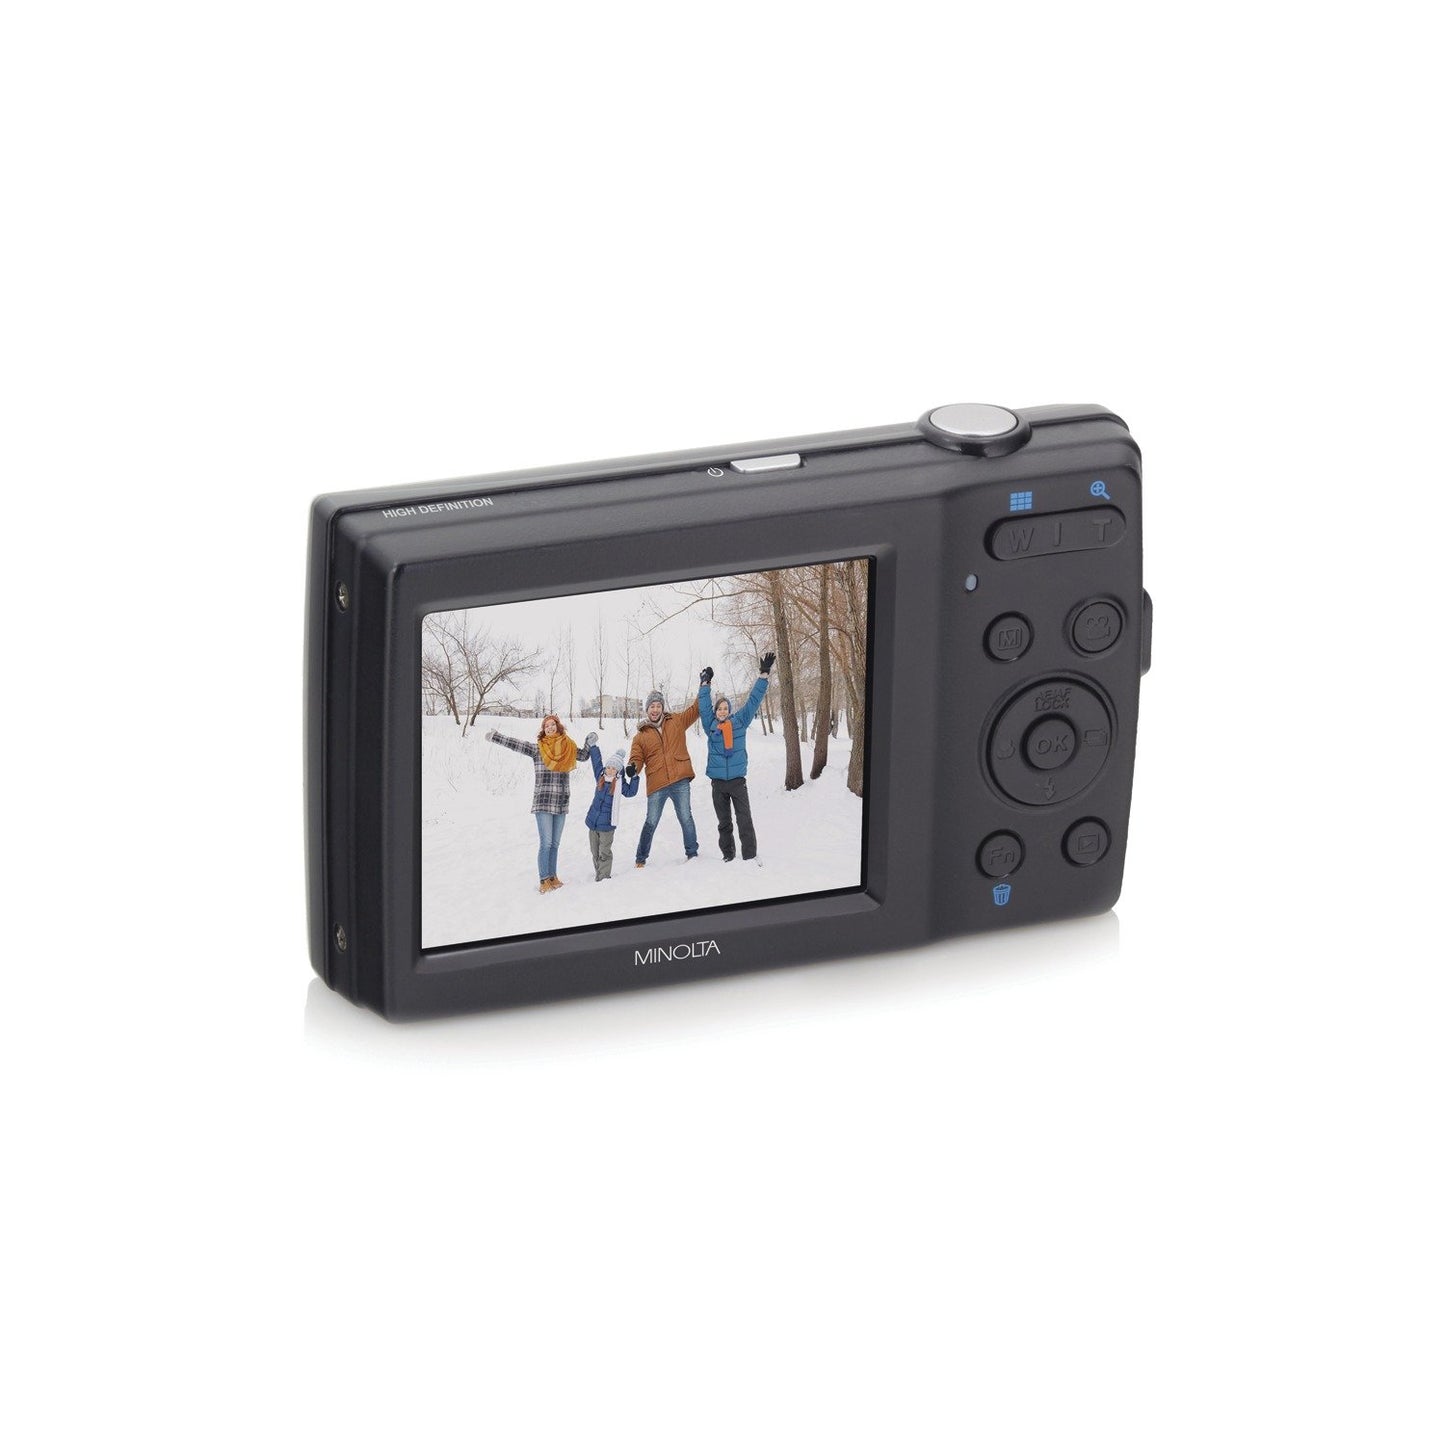 Minolta MN5ZBK 20.0-Megapixel MN5Z HD Digital Camera with 5x Zoom (Black)